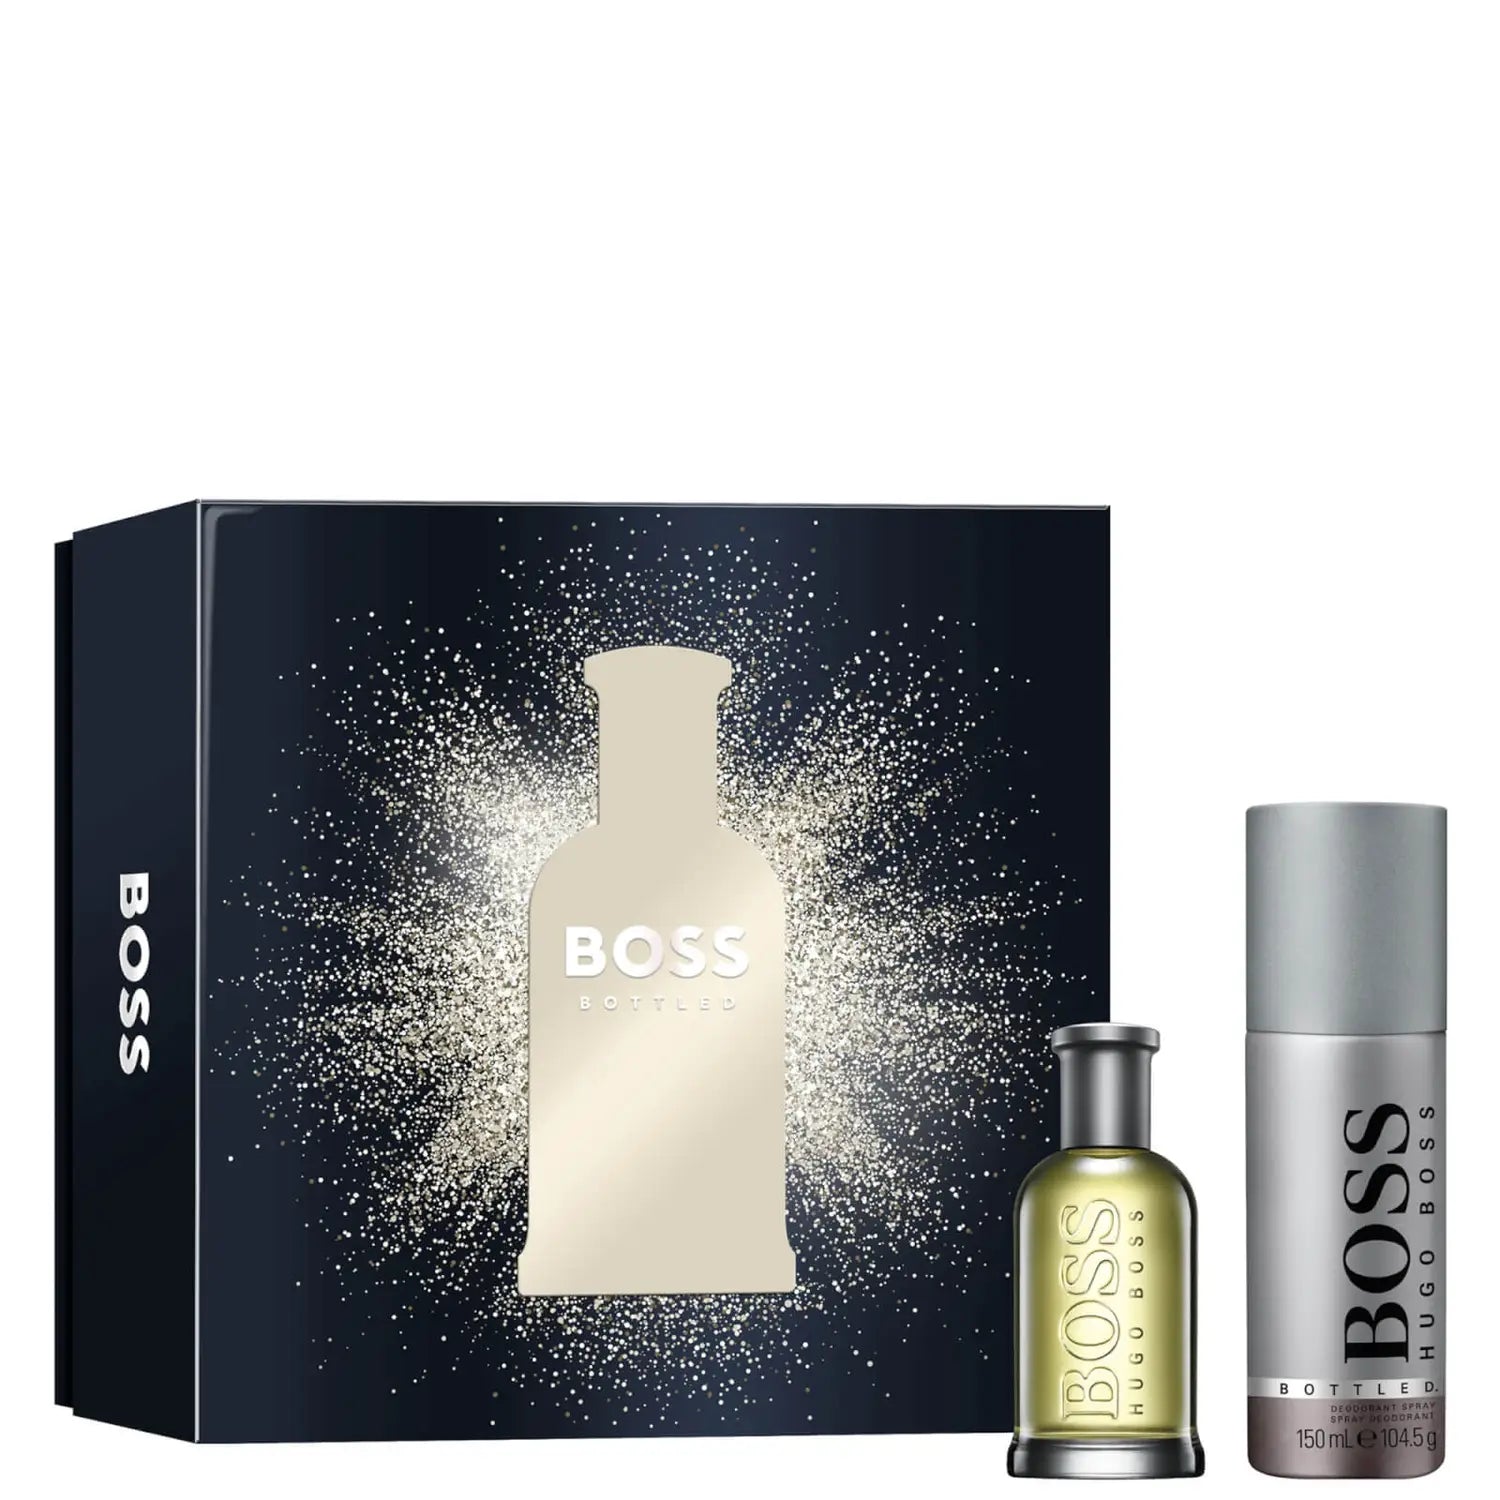 Hugo Boss Boss Bottled EDT 50ml Xmas Set 23 Image